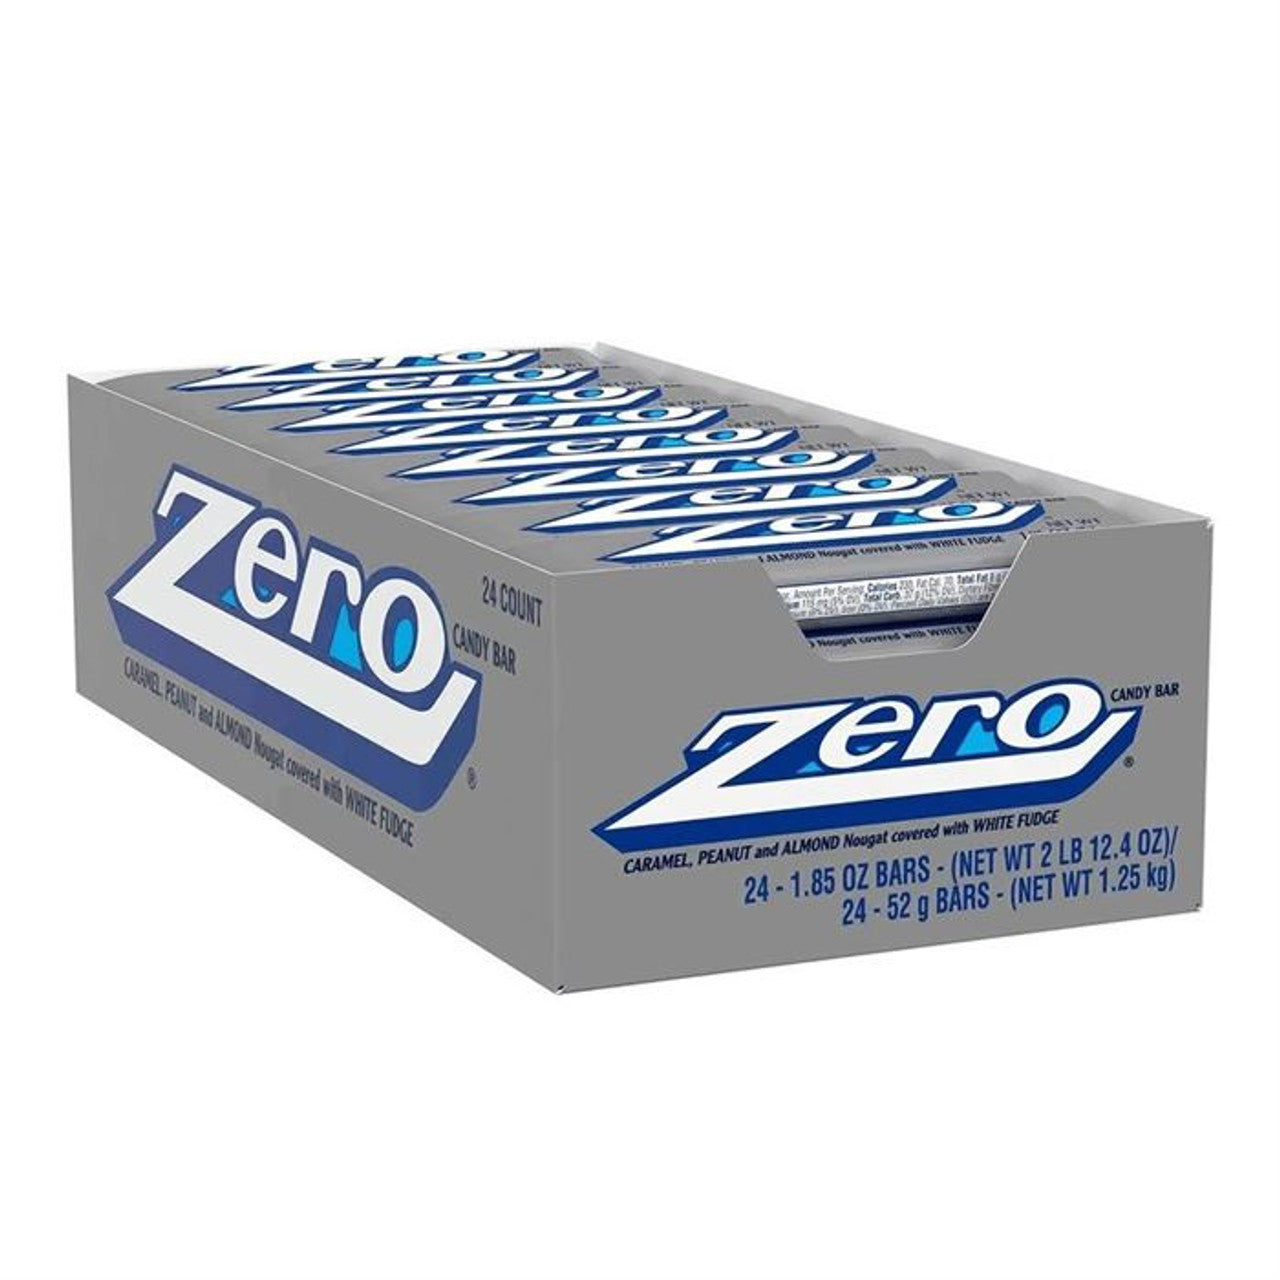 Zero Candy Bar 1.85oz 24 Count